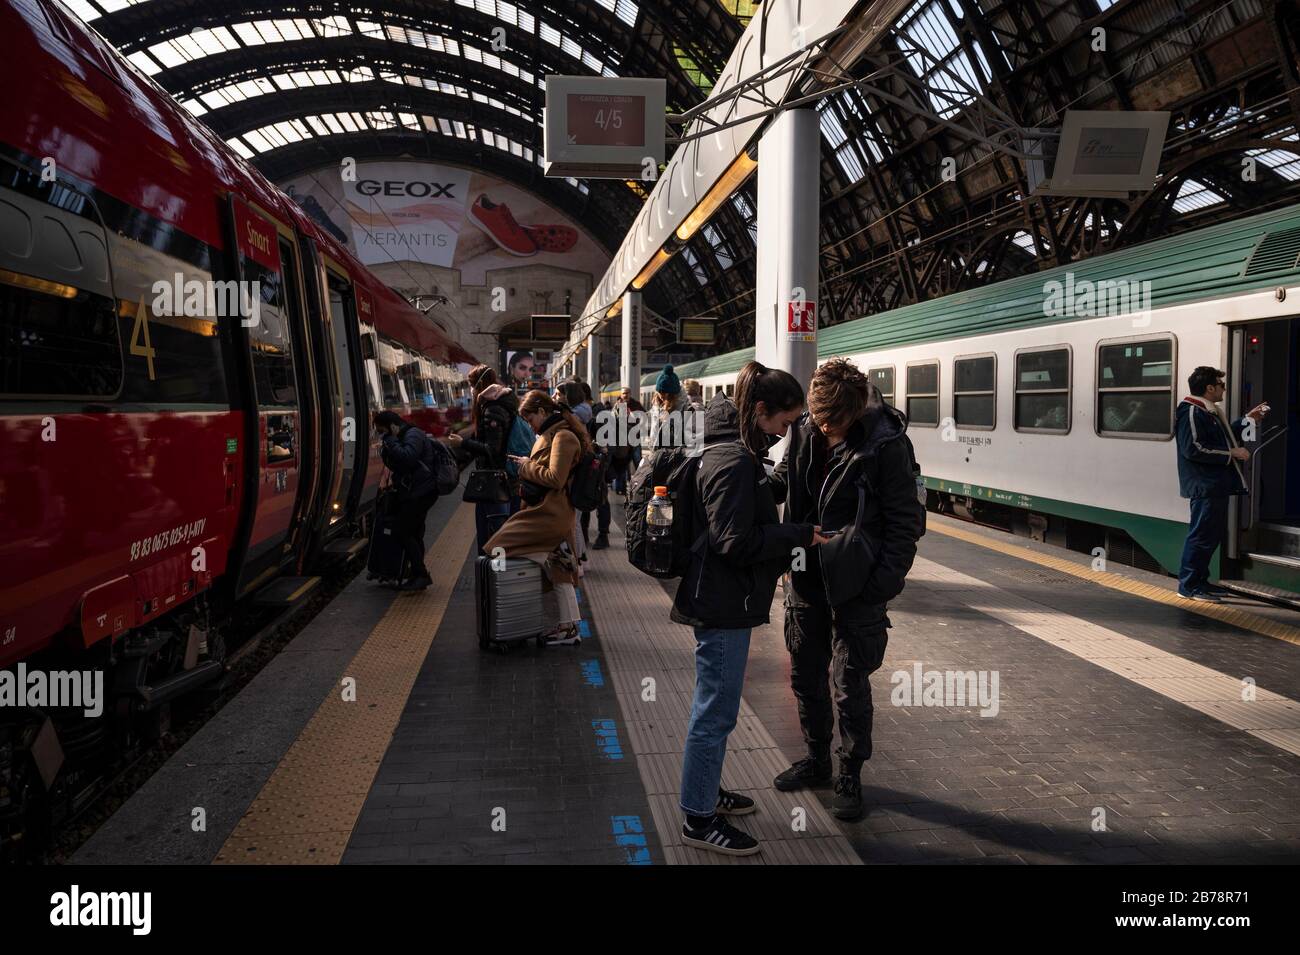 Milano province immagini e fotografie stock ad alta risoluzione - Alamy